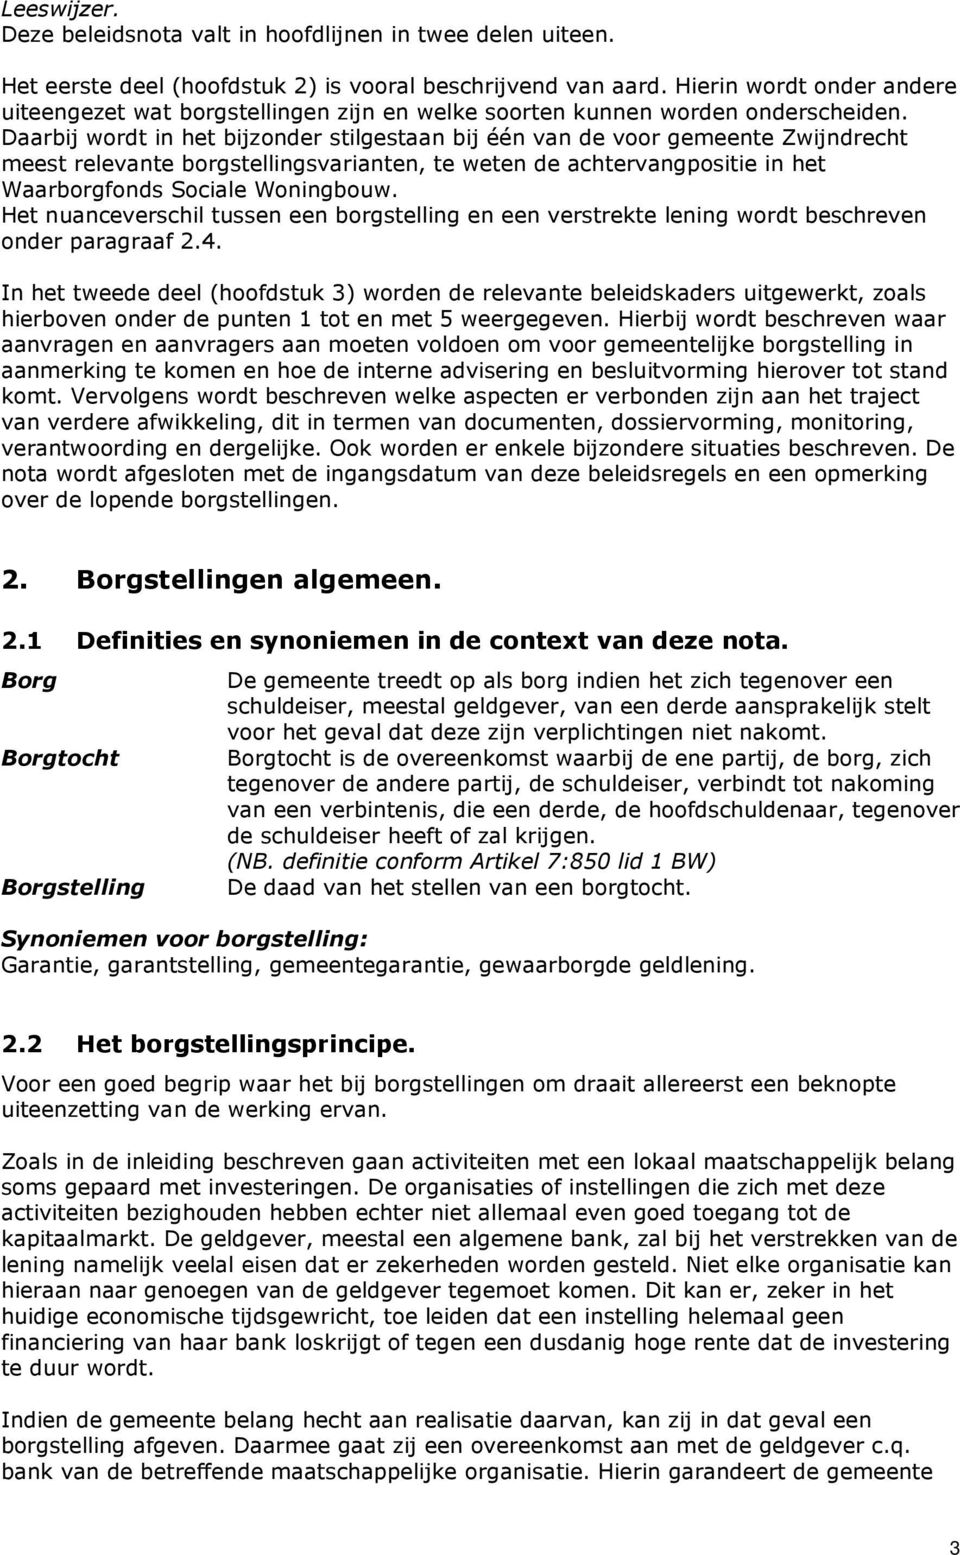 Daarbij wordt in het bijzonder stilgestaan bij één van de voor gemeente Zwijndrecht meest relevante borgstellingsvarianten, te weten de achtervangpositie in het Waarborgfonds Sociale Woningbouw.